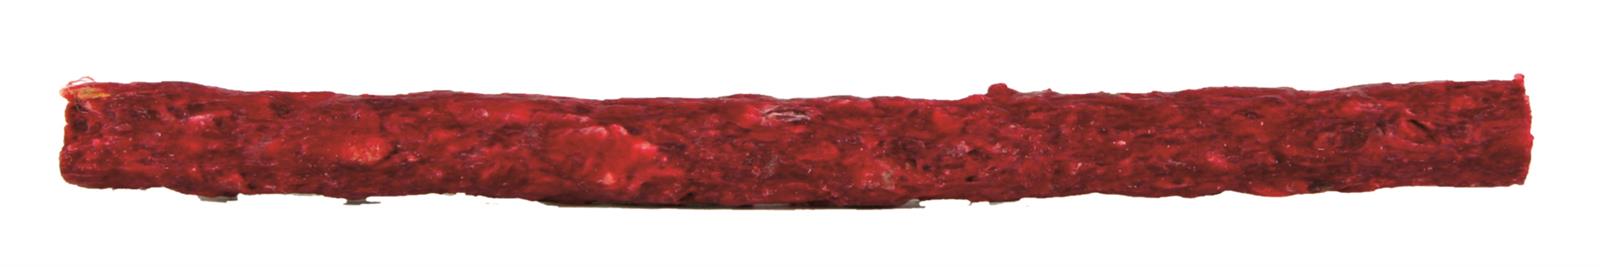 Trixie Tyggeruller, 12 cm/ø 9-10 mm, 100 stk., rød